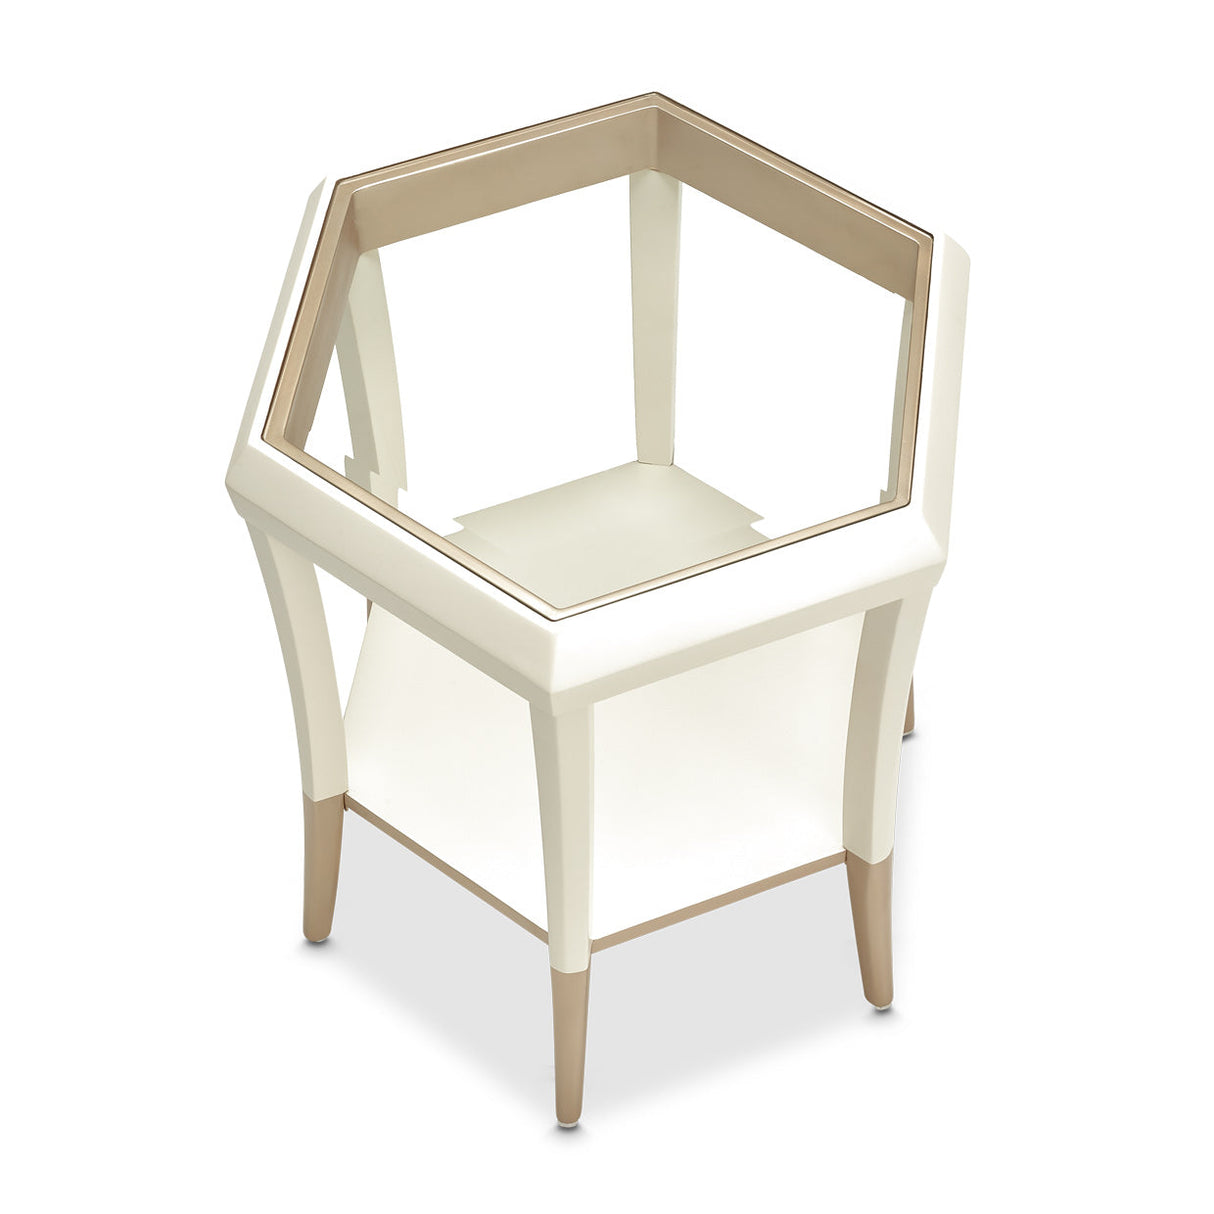 Aico Furniture - La Rachelle Hexagon Accent Table In Medium Champagne - 9034222-136